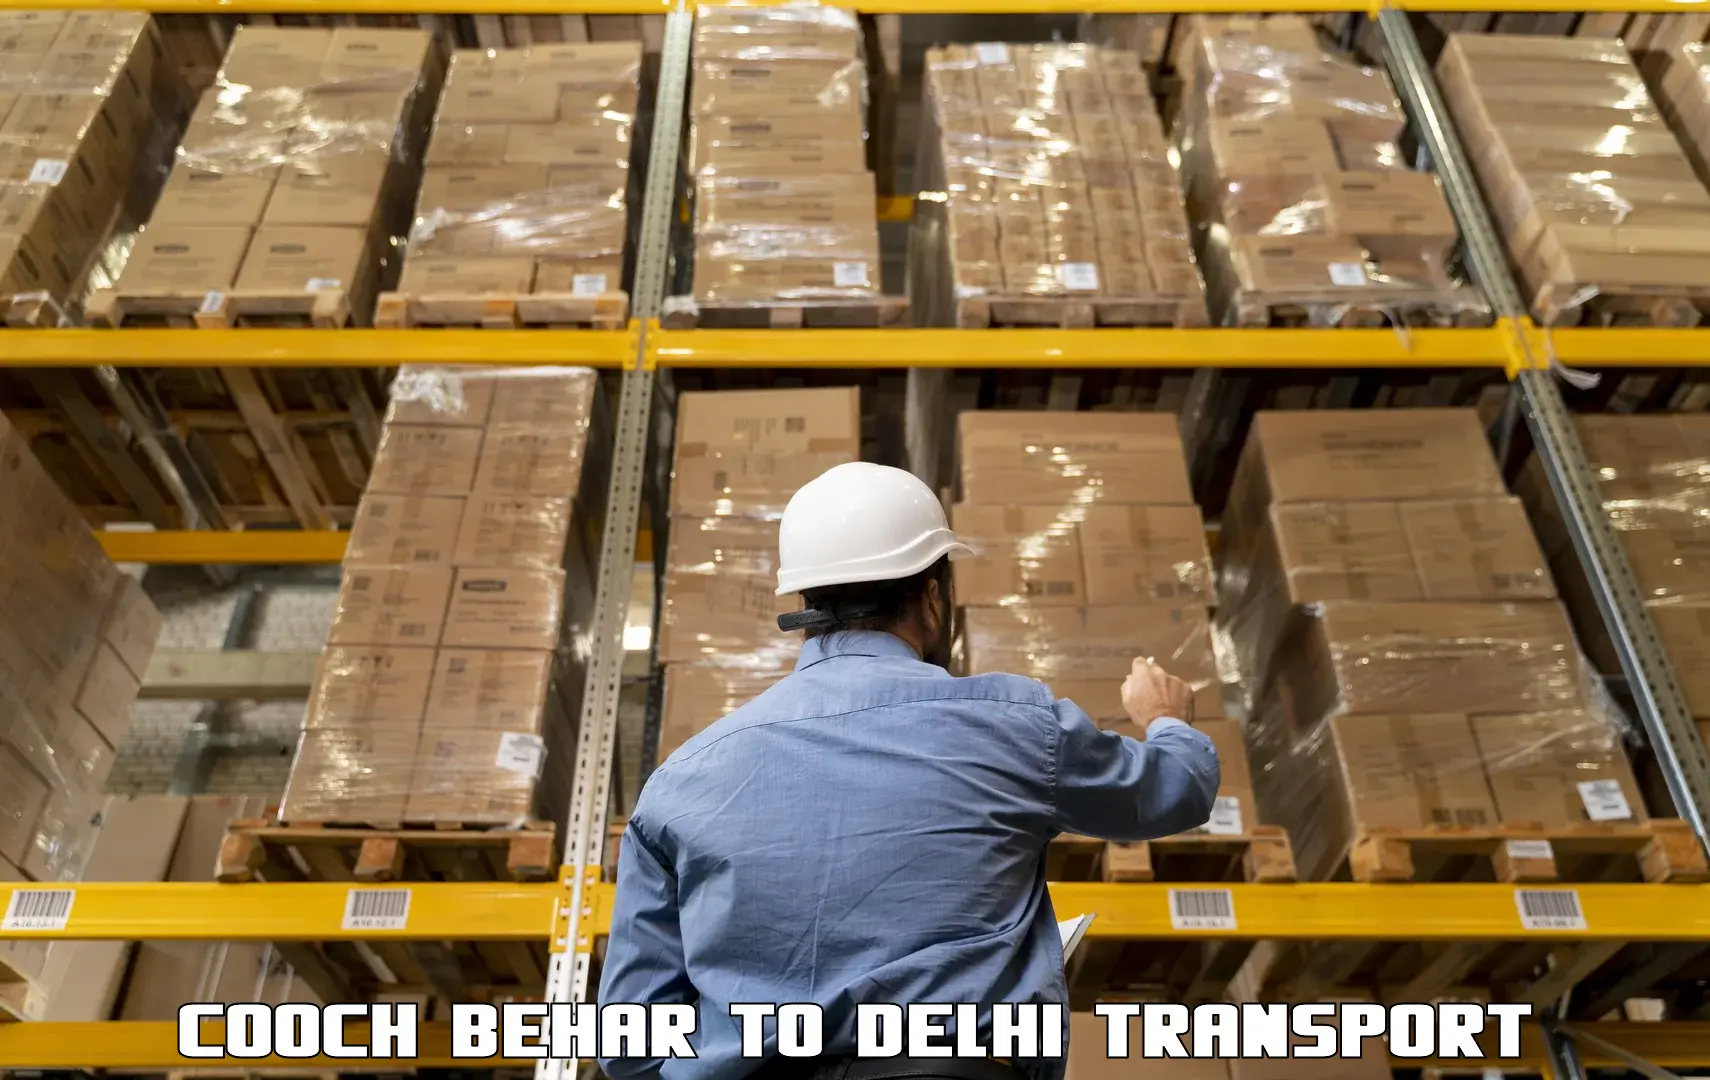 Daily transport service Cooch Behar to Jamia Millia Islamia New Delhi